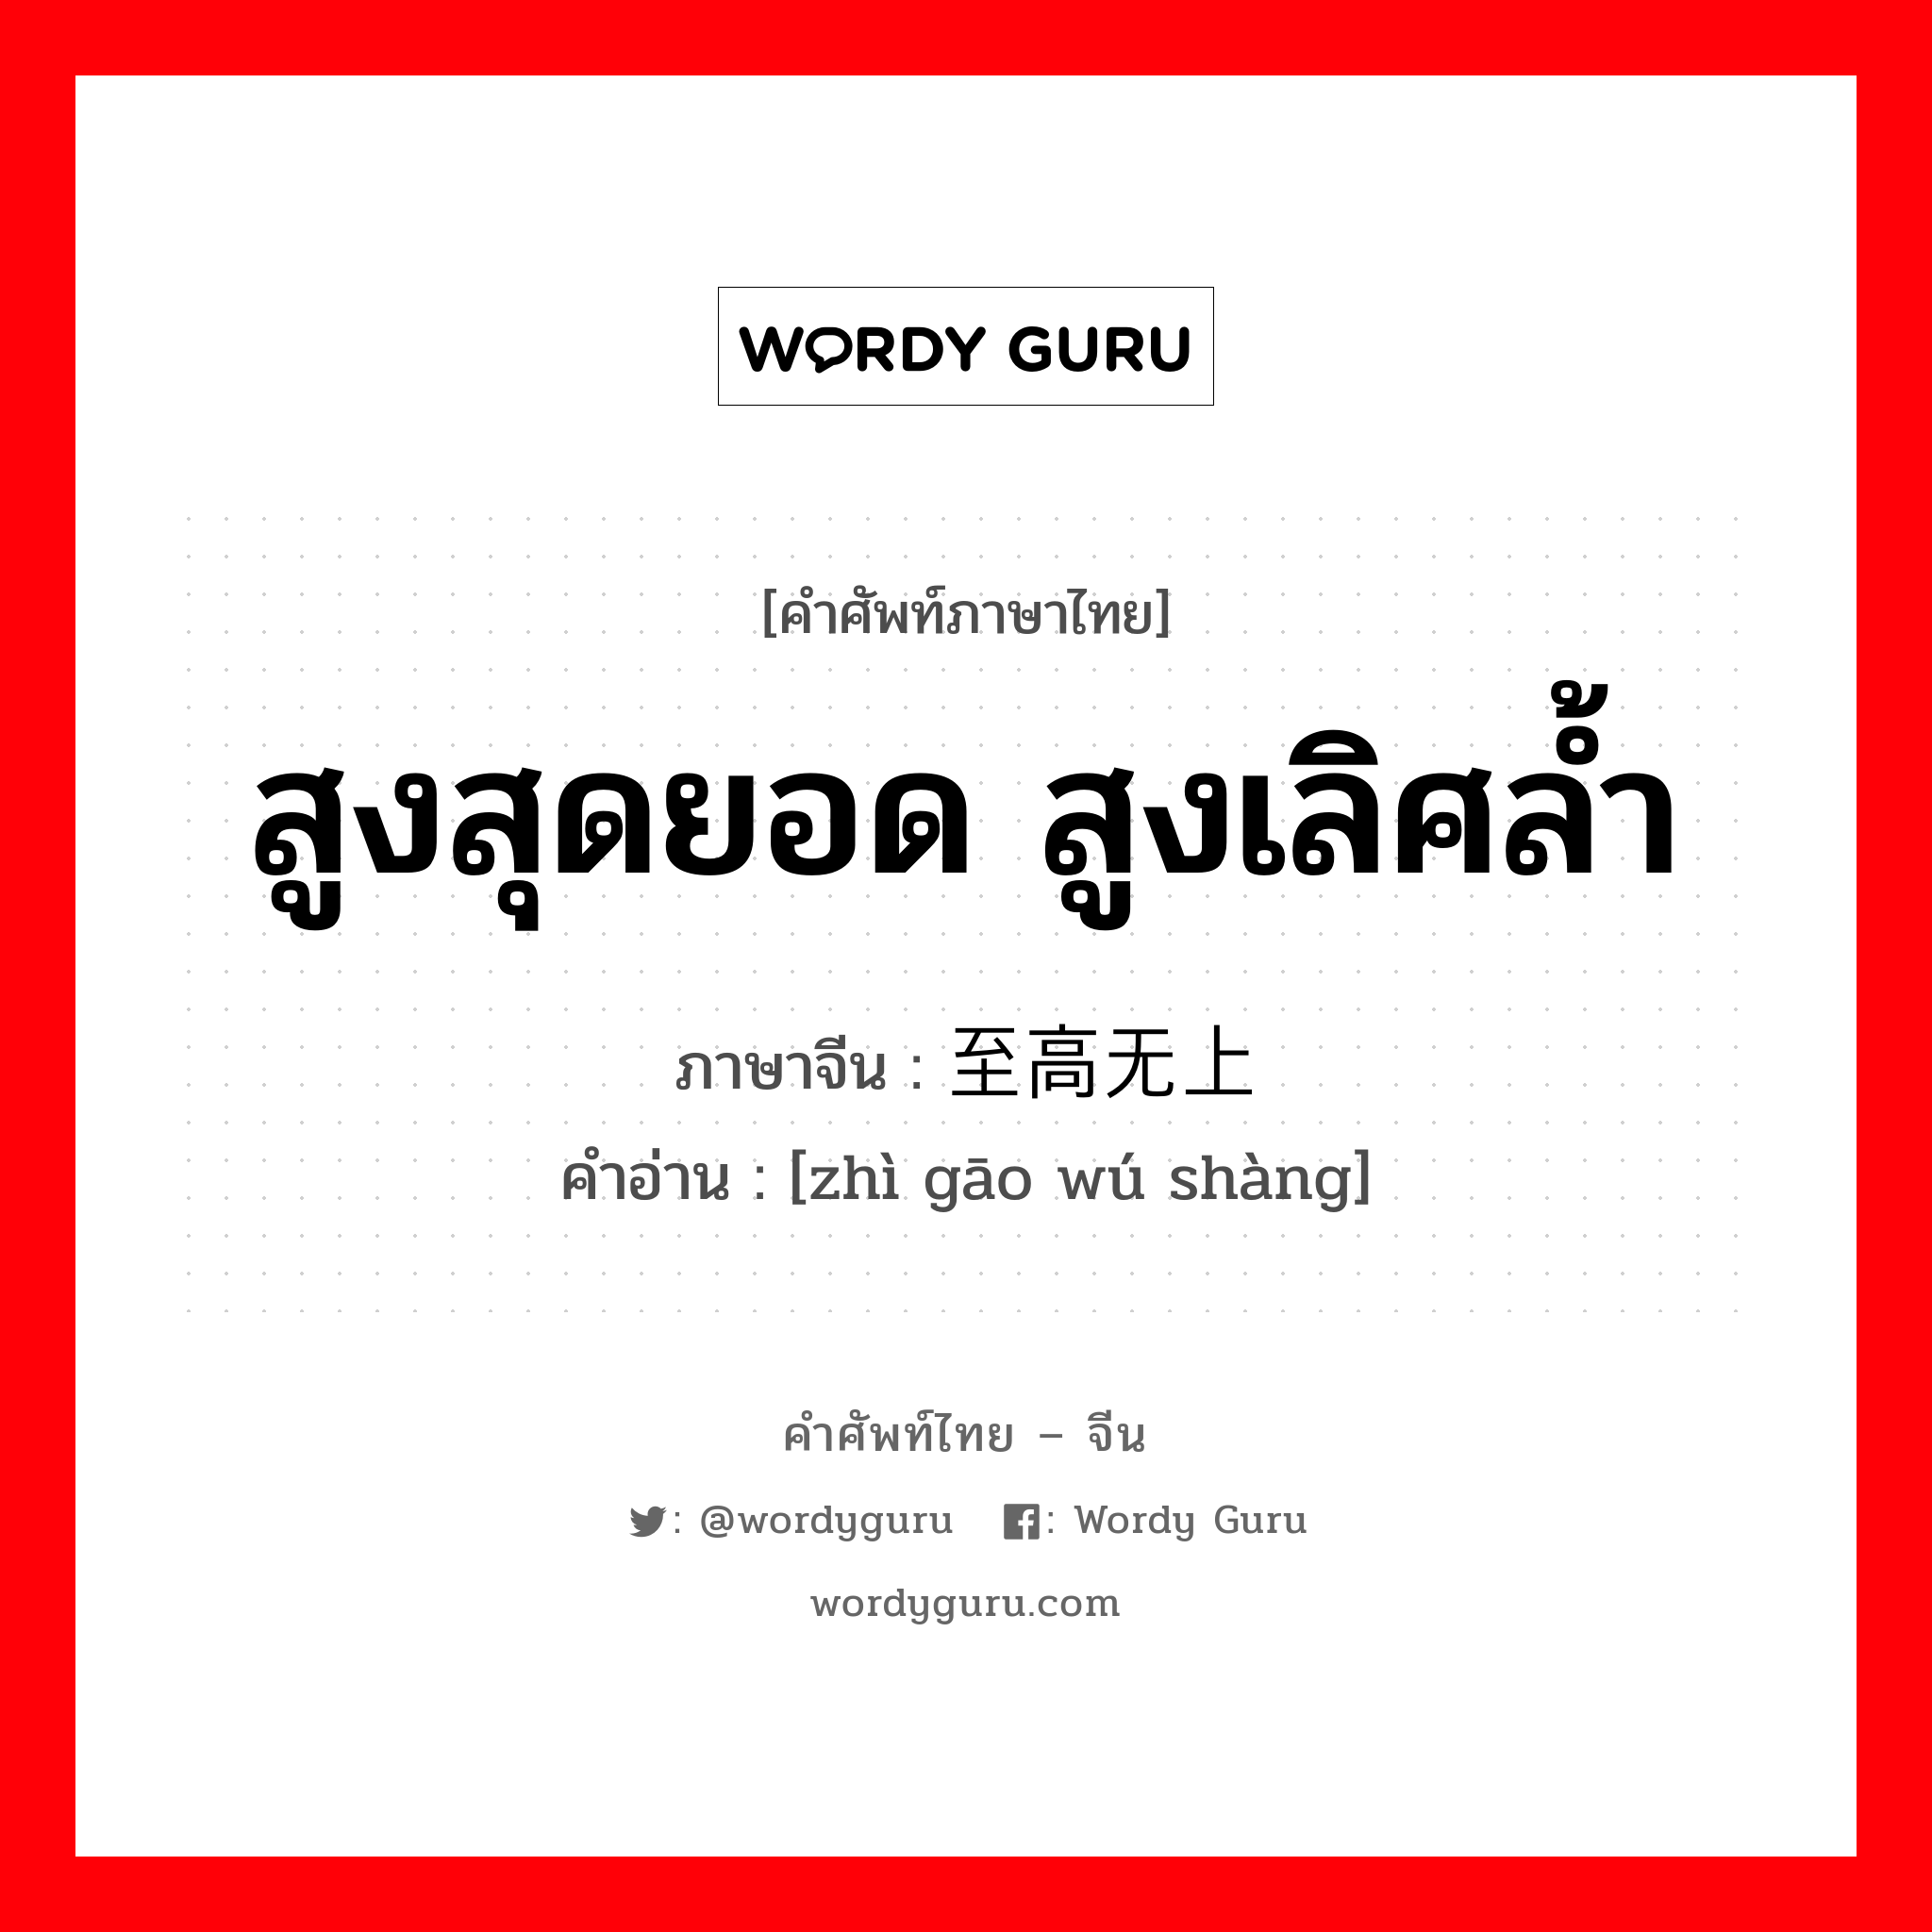 สูงสุดยอด สูงเลิศล้ำ ภาษาจีนคืออะไร, คำศัพท์ภาษาไทย - จีน สูงสุดยอด สูงเลิศล้ำ ภาษาจีน 至高无上 คำอ่าน [zhì gāo wú shàng]